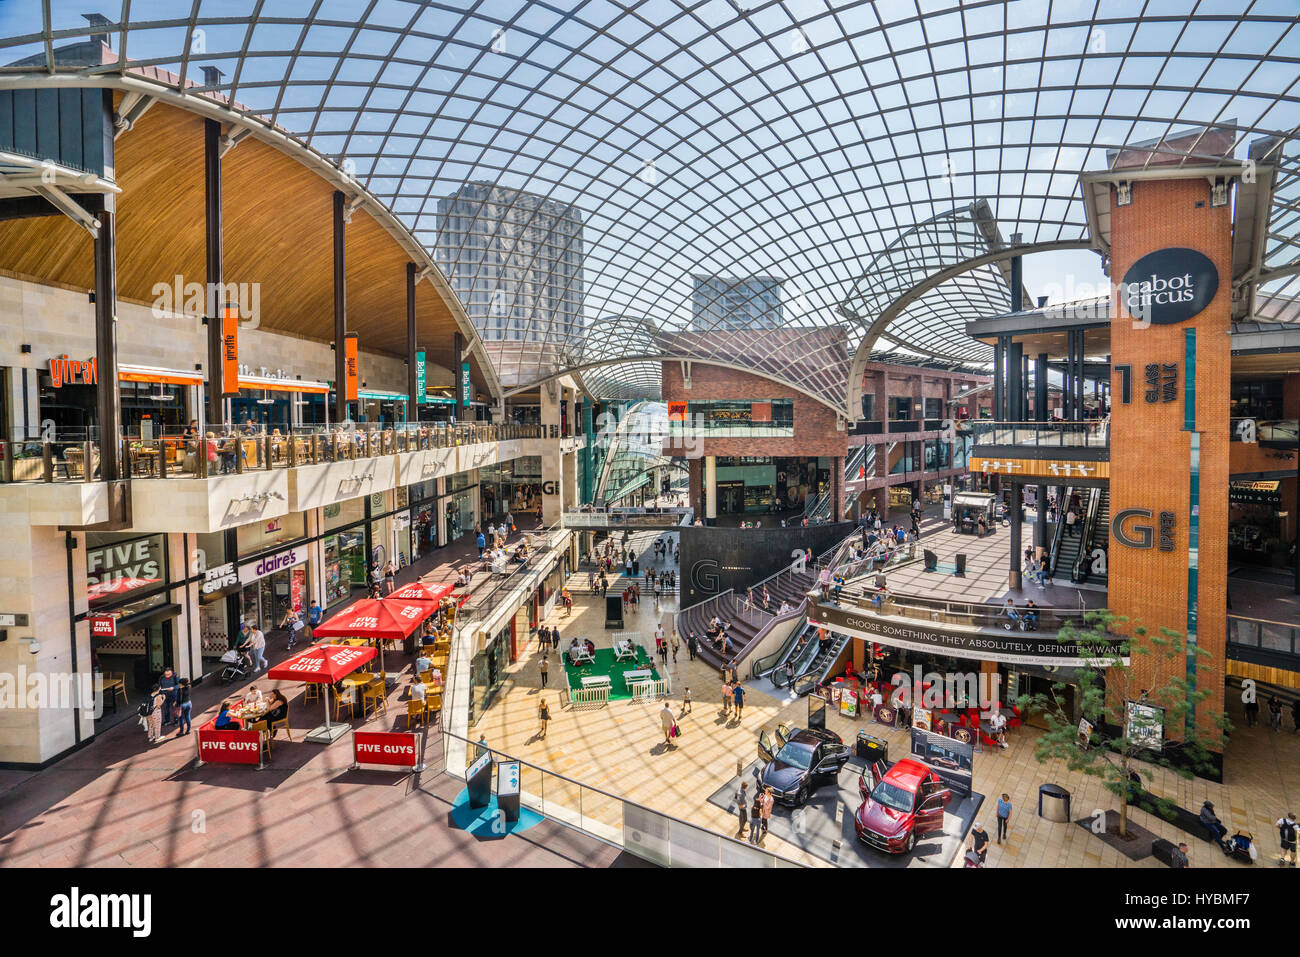 Royaume-uni, le sud-ouest de l'Angleterre, Bristol, le centre commercial Cabot Circus avec un immense toit lambrissé de verre Banque D'Images